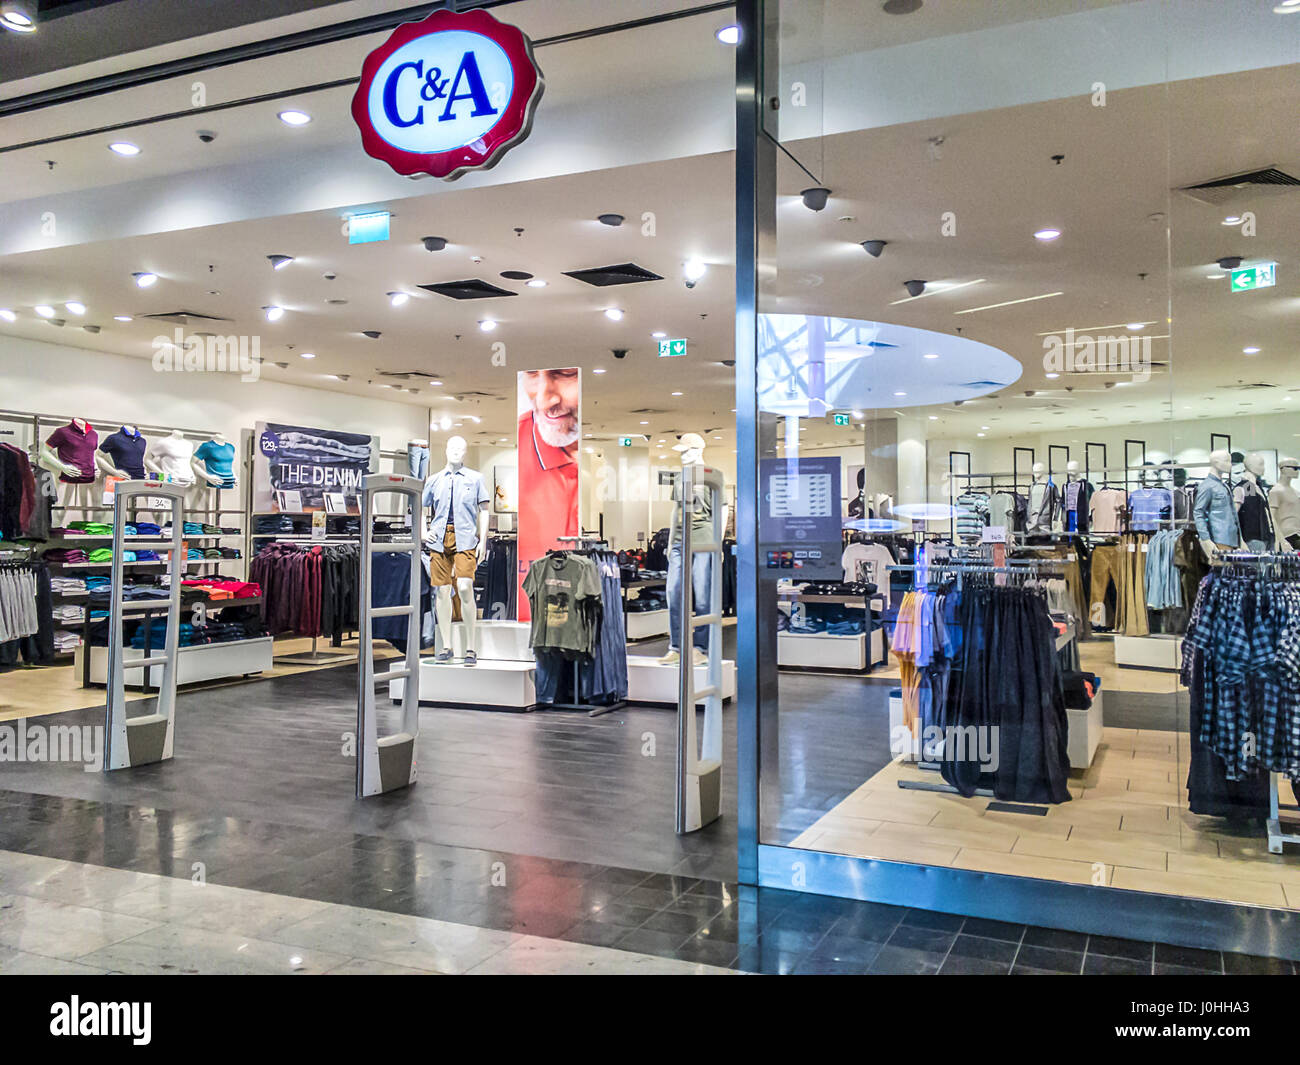 Nowy Sacz, Polonia - Marzo 29, 2017: parte delantera de la tienda C&A . C&A ( Clemens & agosto) es una cadena holandesa tiendas de moda tiendas de ropa Fotografía de stock - Alamy